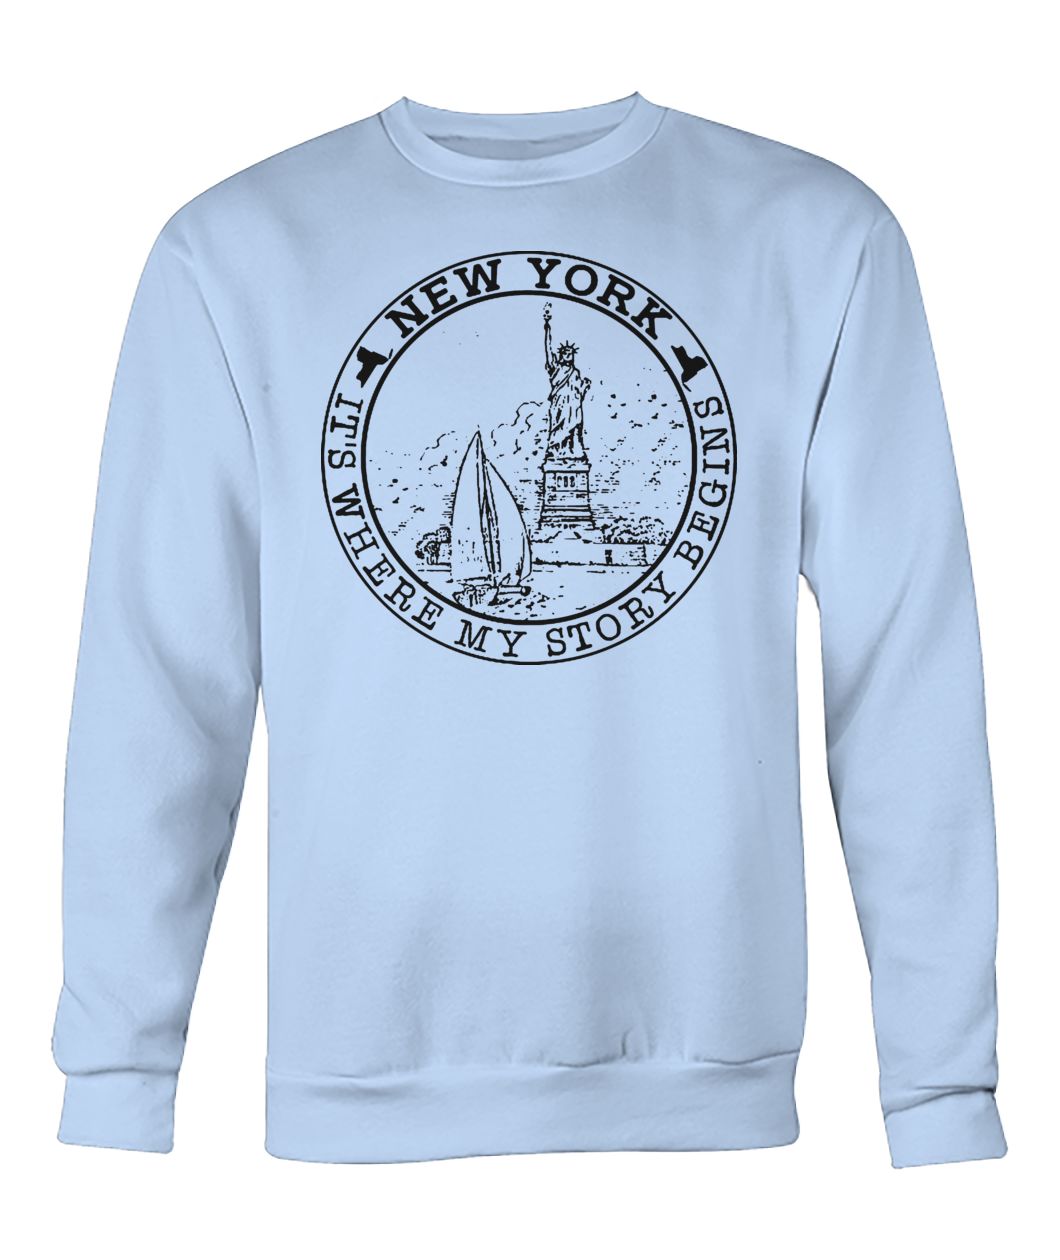 New york it's where my story begins crew neck sweatshirt